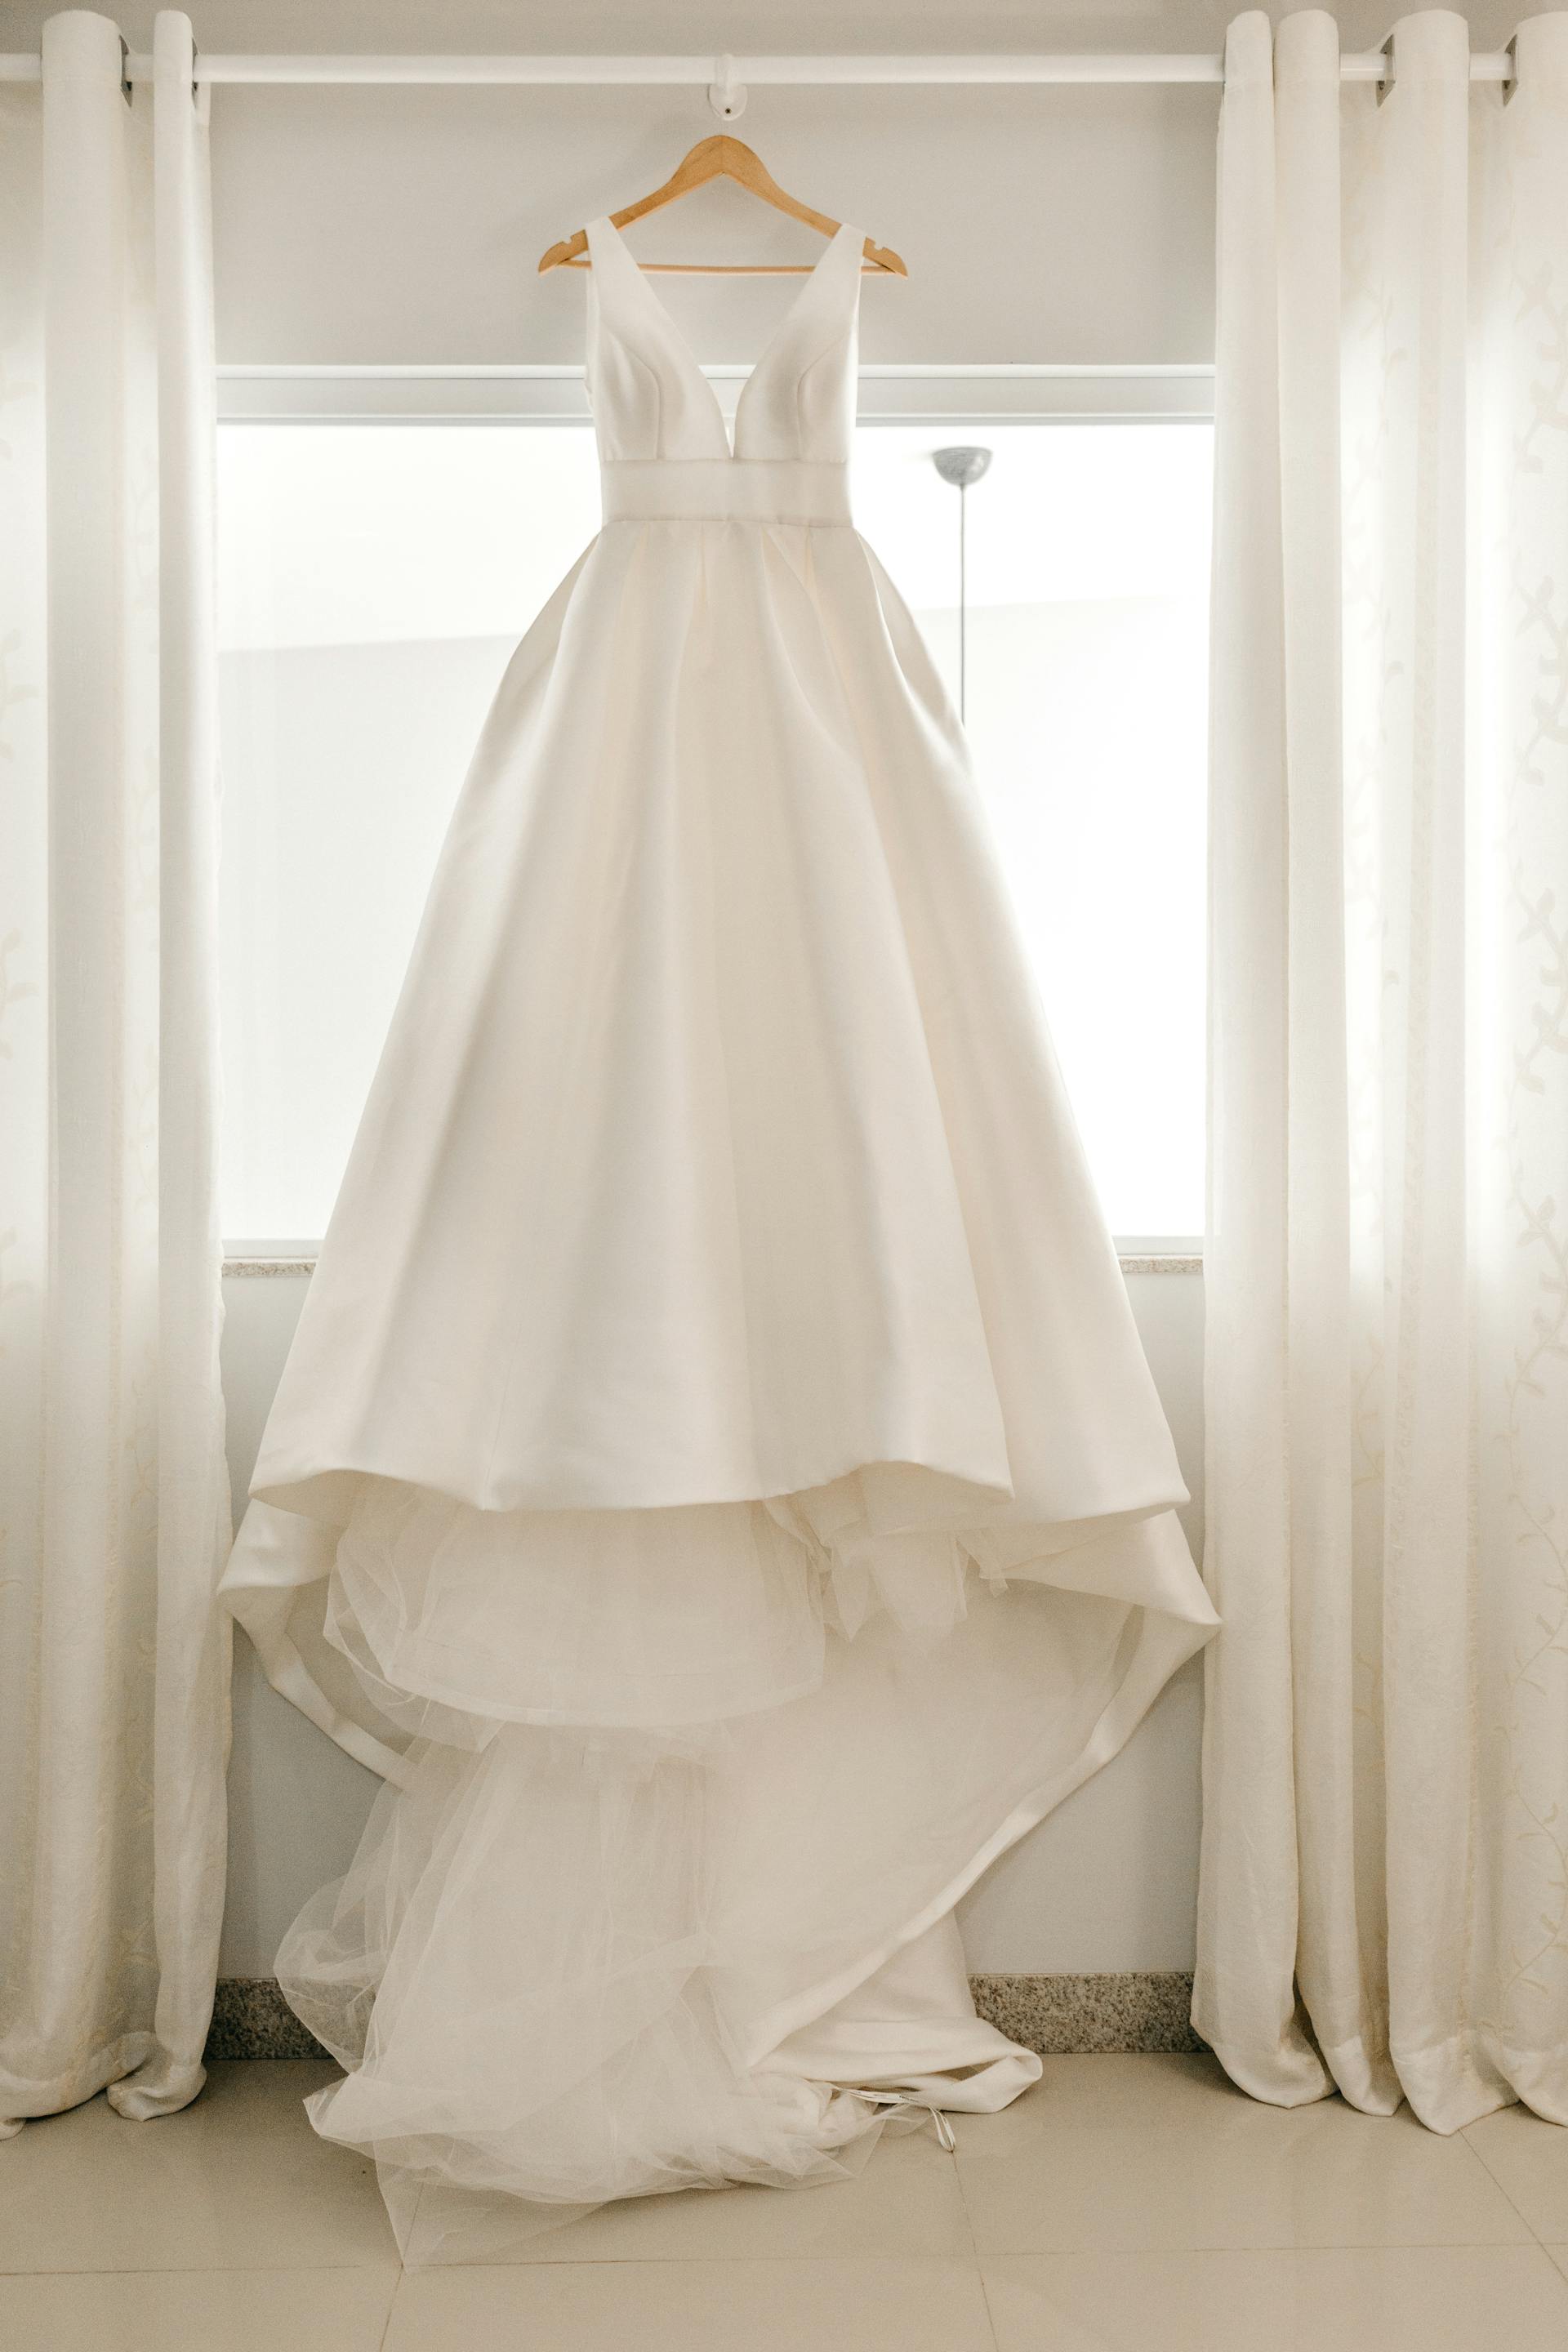 Vestido de novia blanco en una percha | Fuente: Pexels